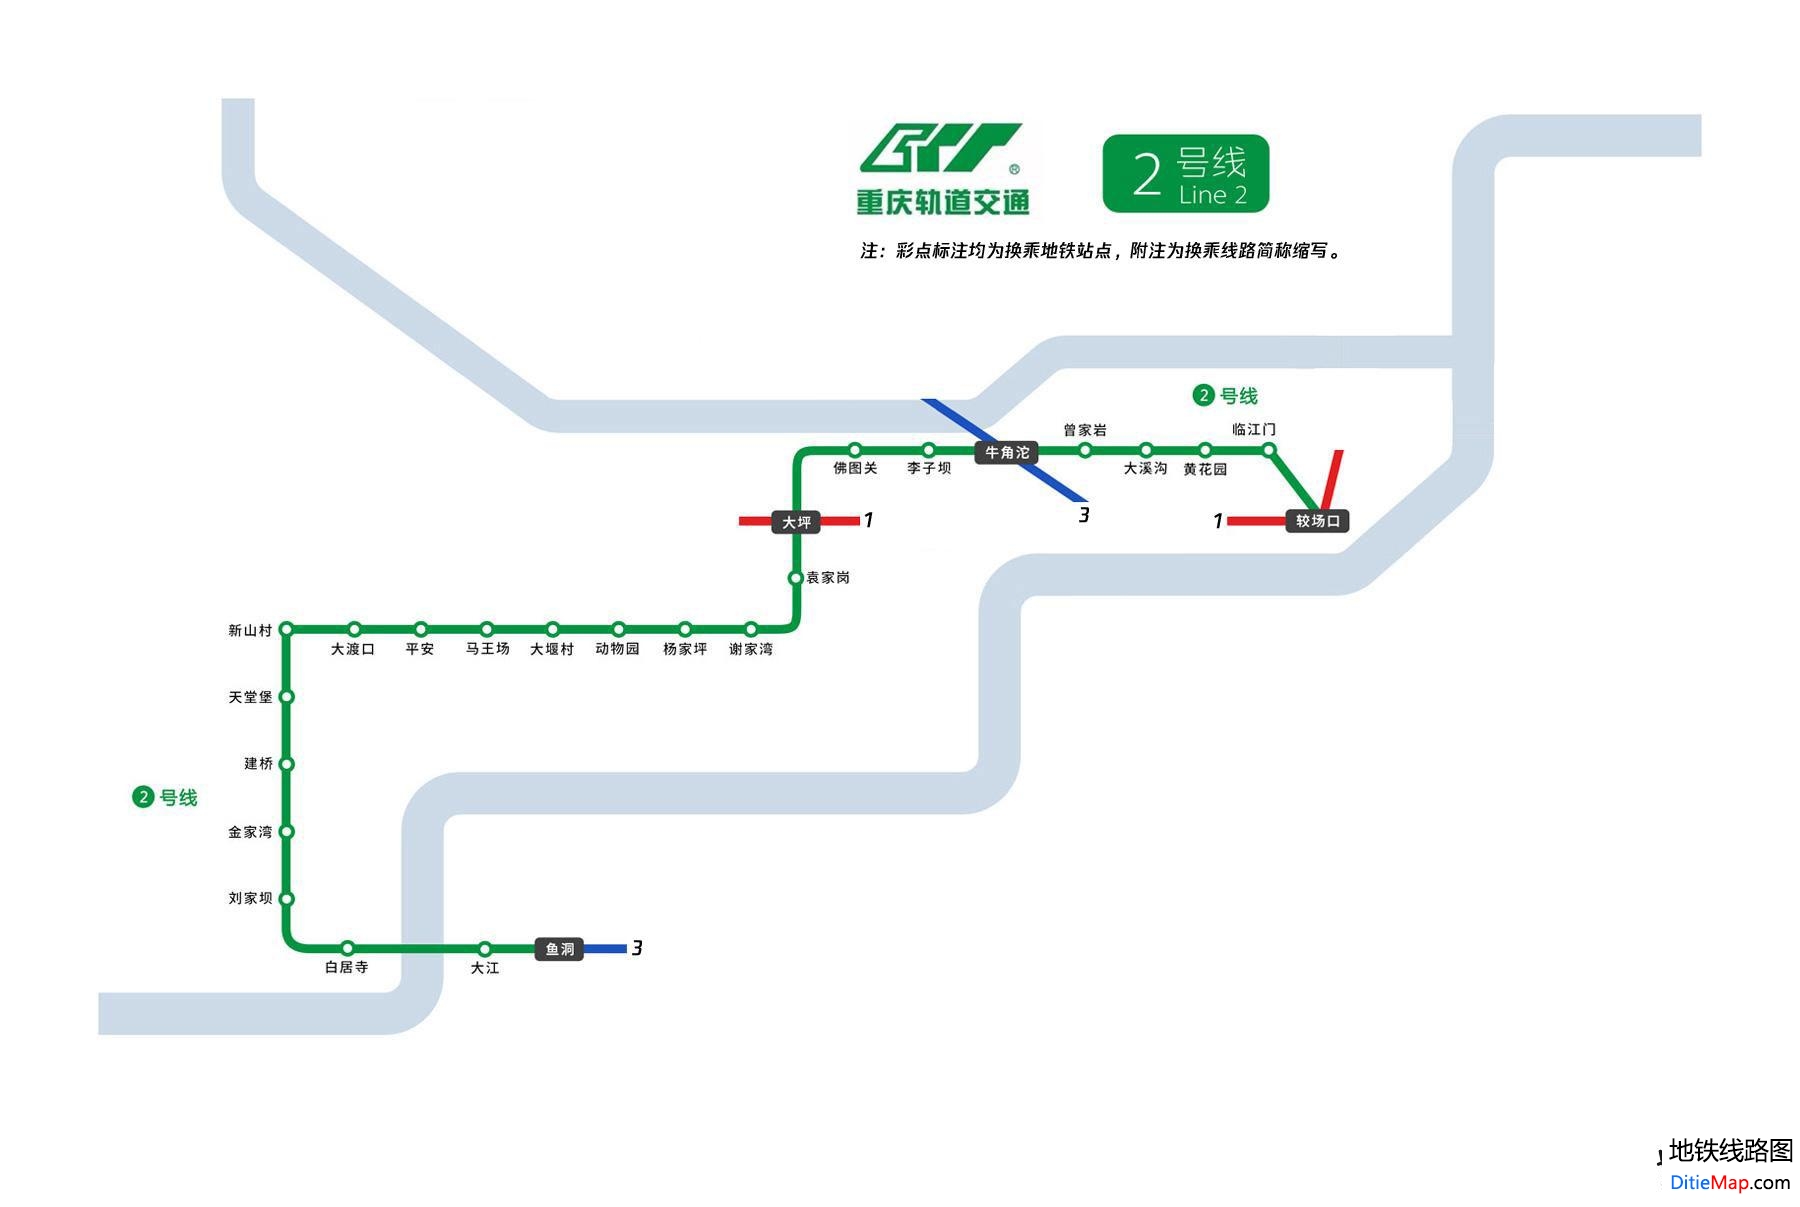 重庆轻轨地铁2号线线路图 运营时间票价站点 查询下载 重庆轻轨2号线